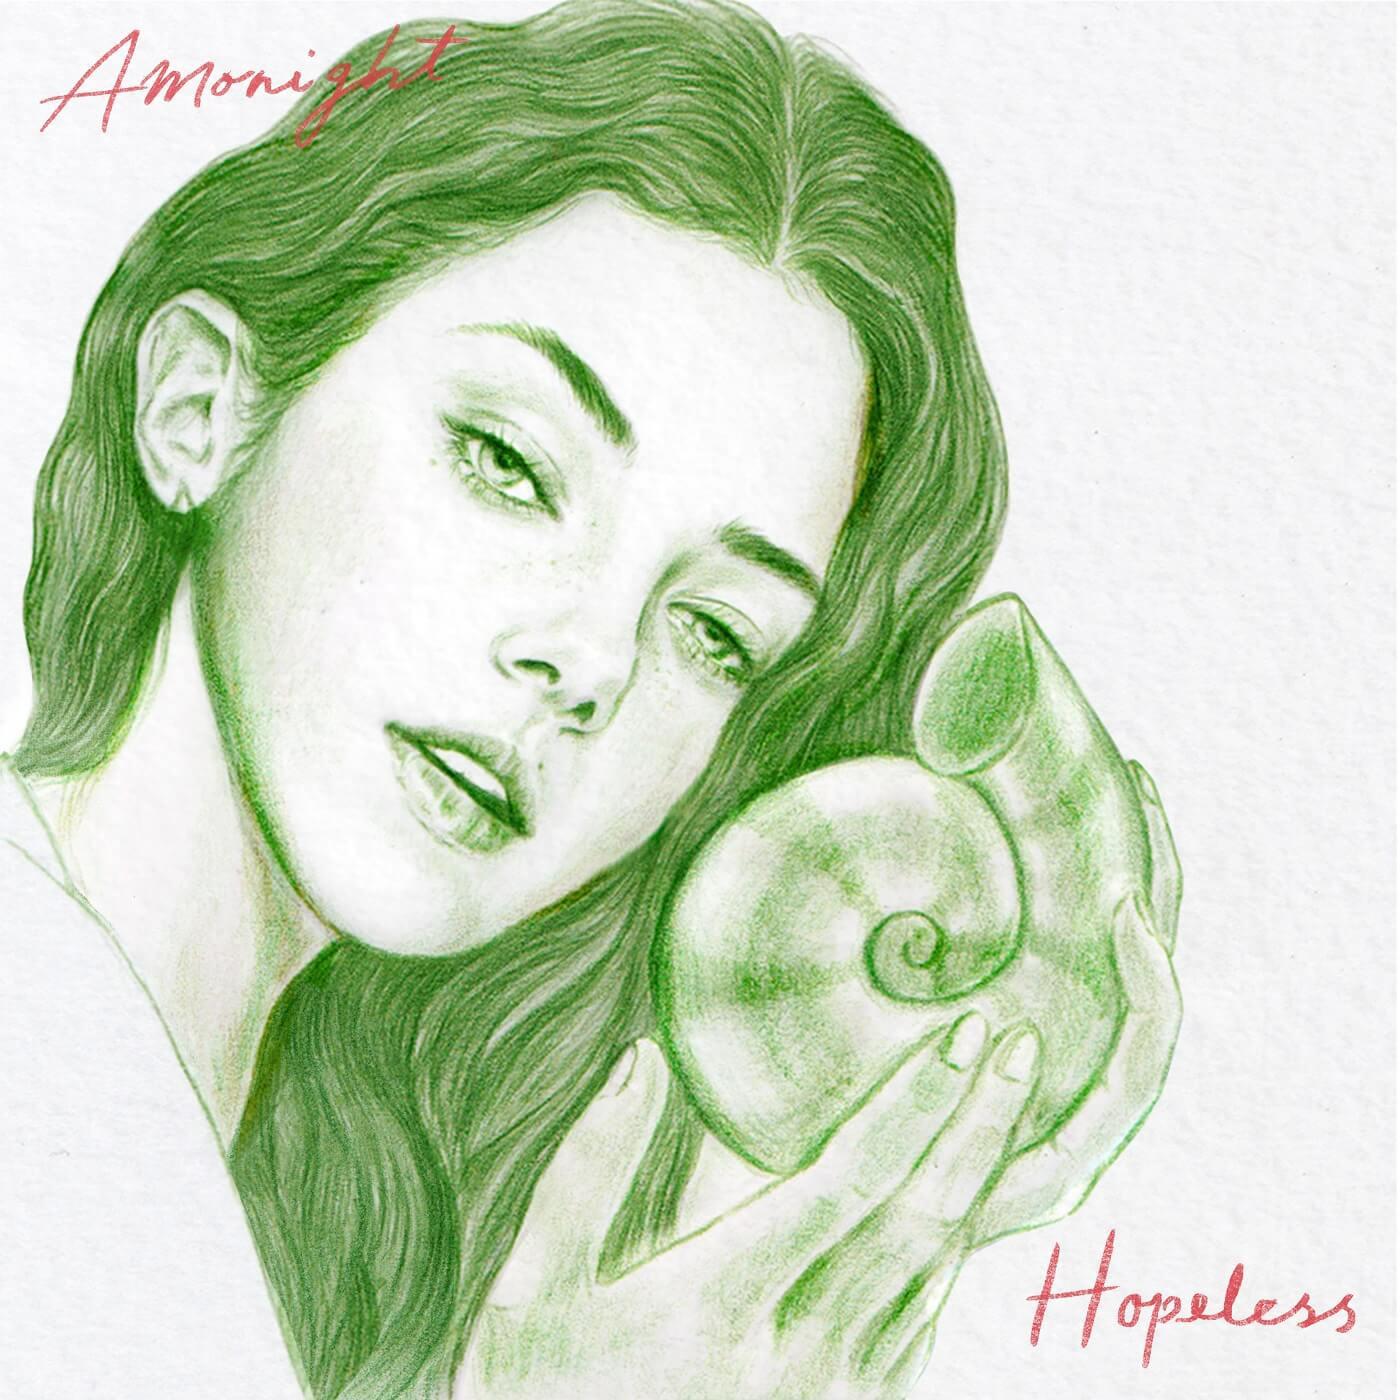 Amonight - Hopeless